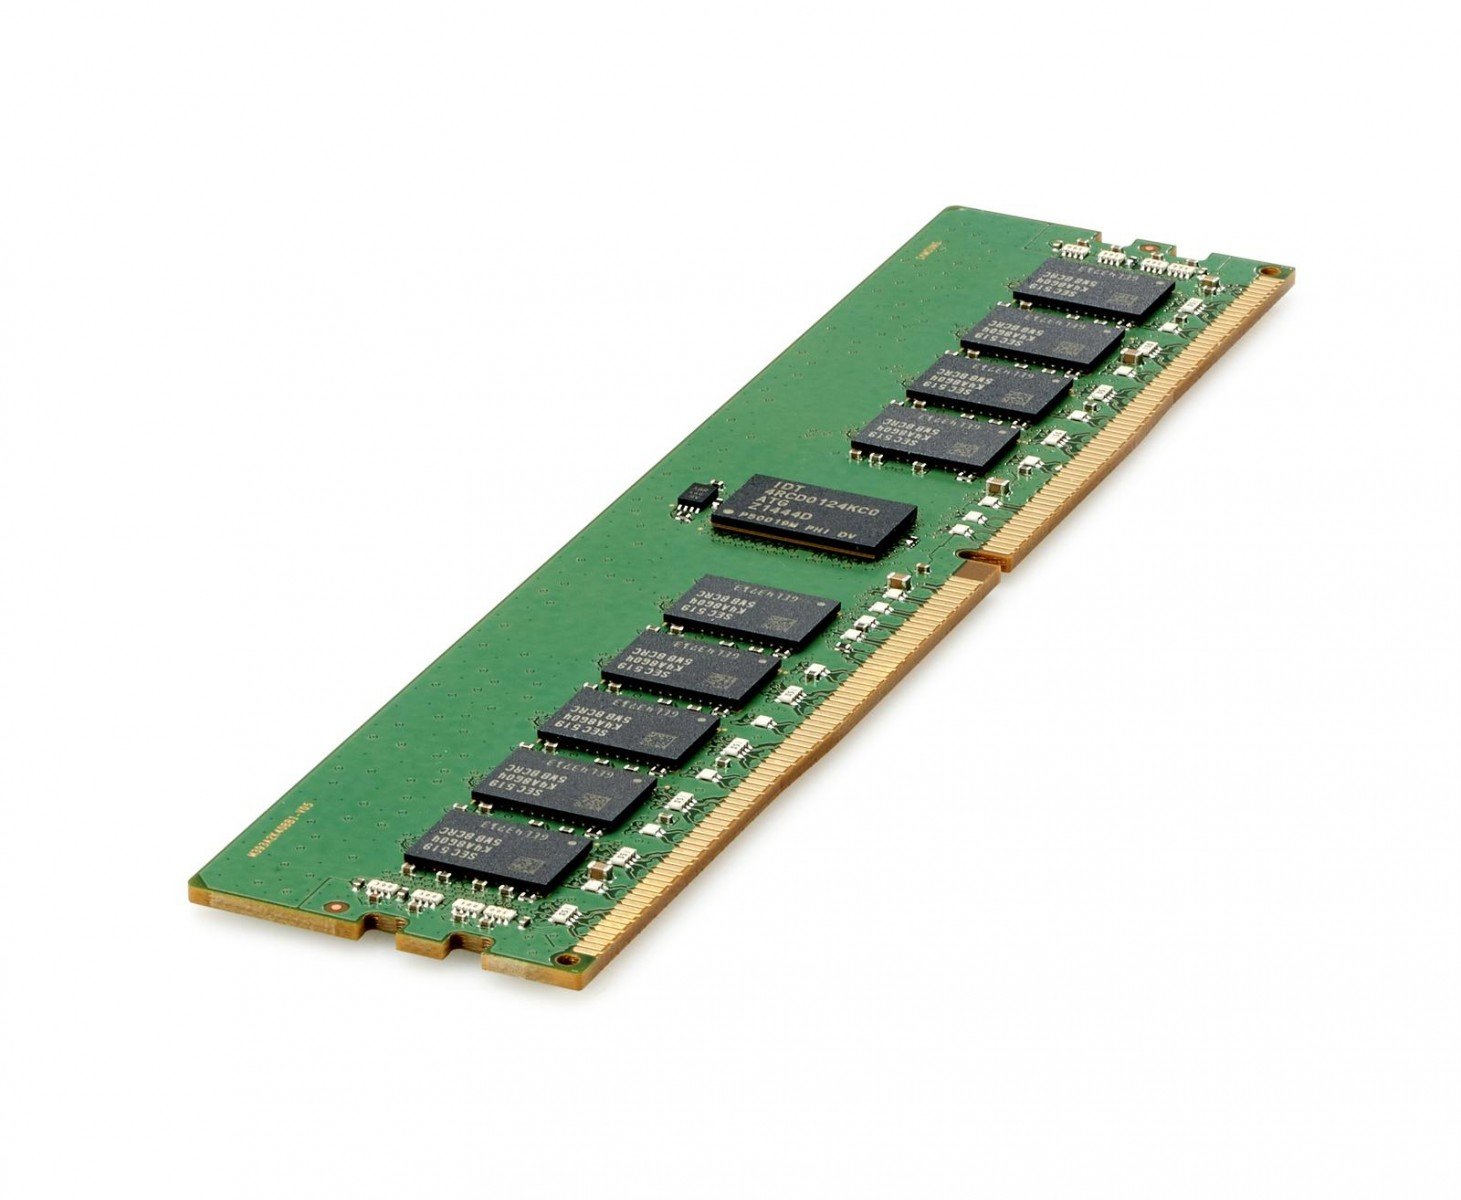 hpe HPE 16GB (1x16GB) Single Rank x8 DDR4-3200 CAS-22-22-22 Unbuffered Standard Memory Kit (P43019-B21)